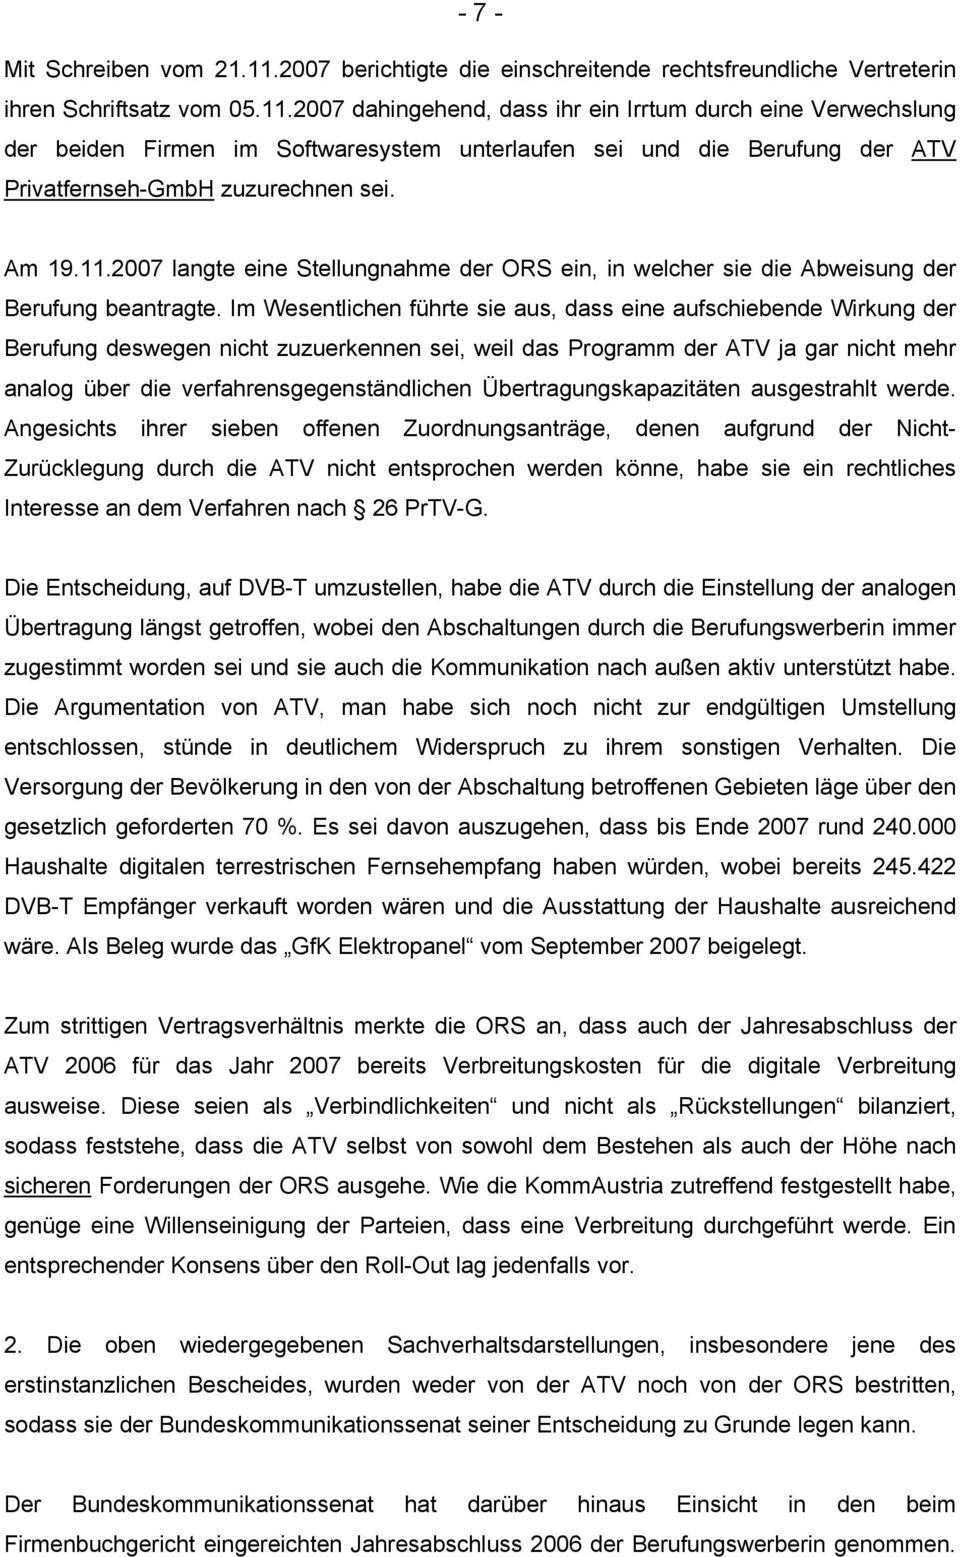 2007 dahingehend, dass ihr ein Irrtum durch eine Verwechslung der beiden Firmen im Softwaresystem unterlaufen sei und die Berufung der ATV Privatfernseh-GmbH zuzurechnen sei. Am 19.11.